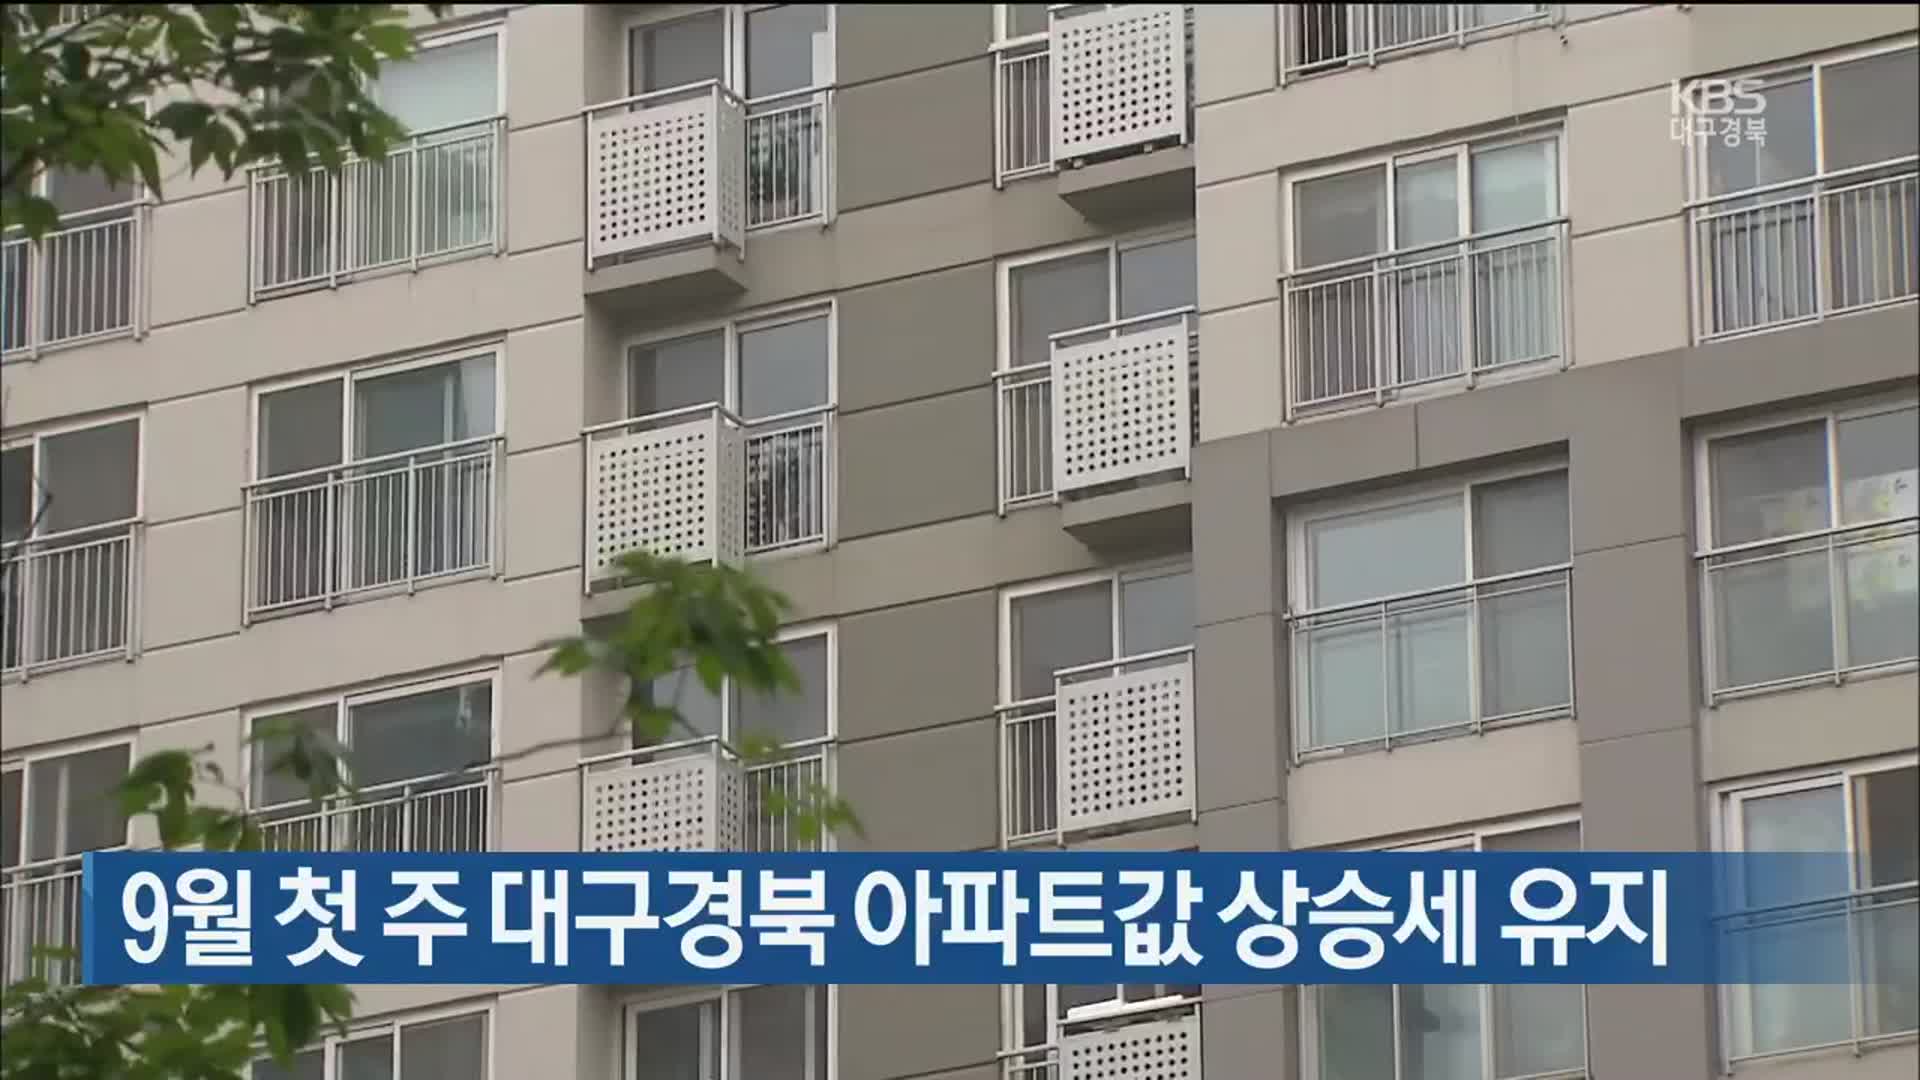 9월 첫 주 대구경북 아파트값 상승세 유지